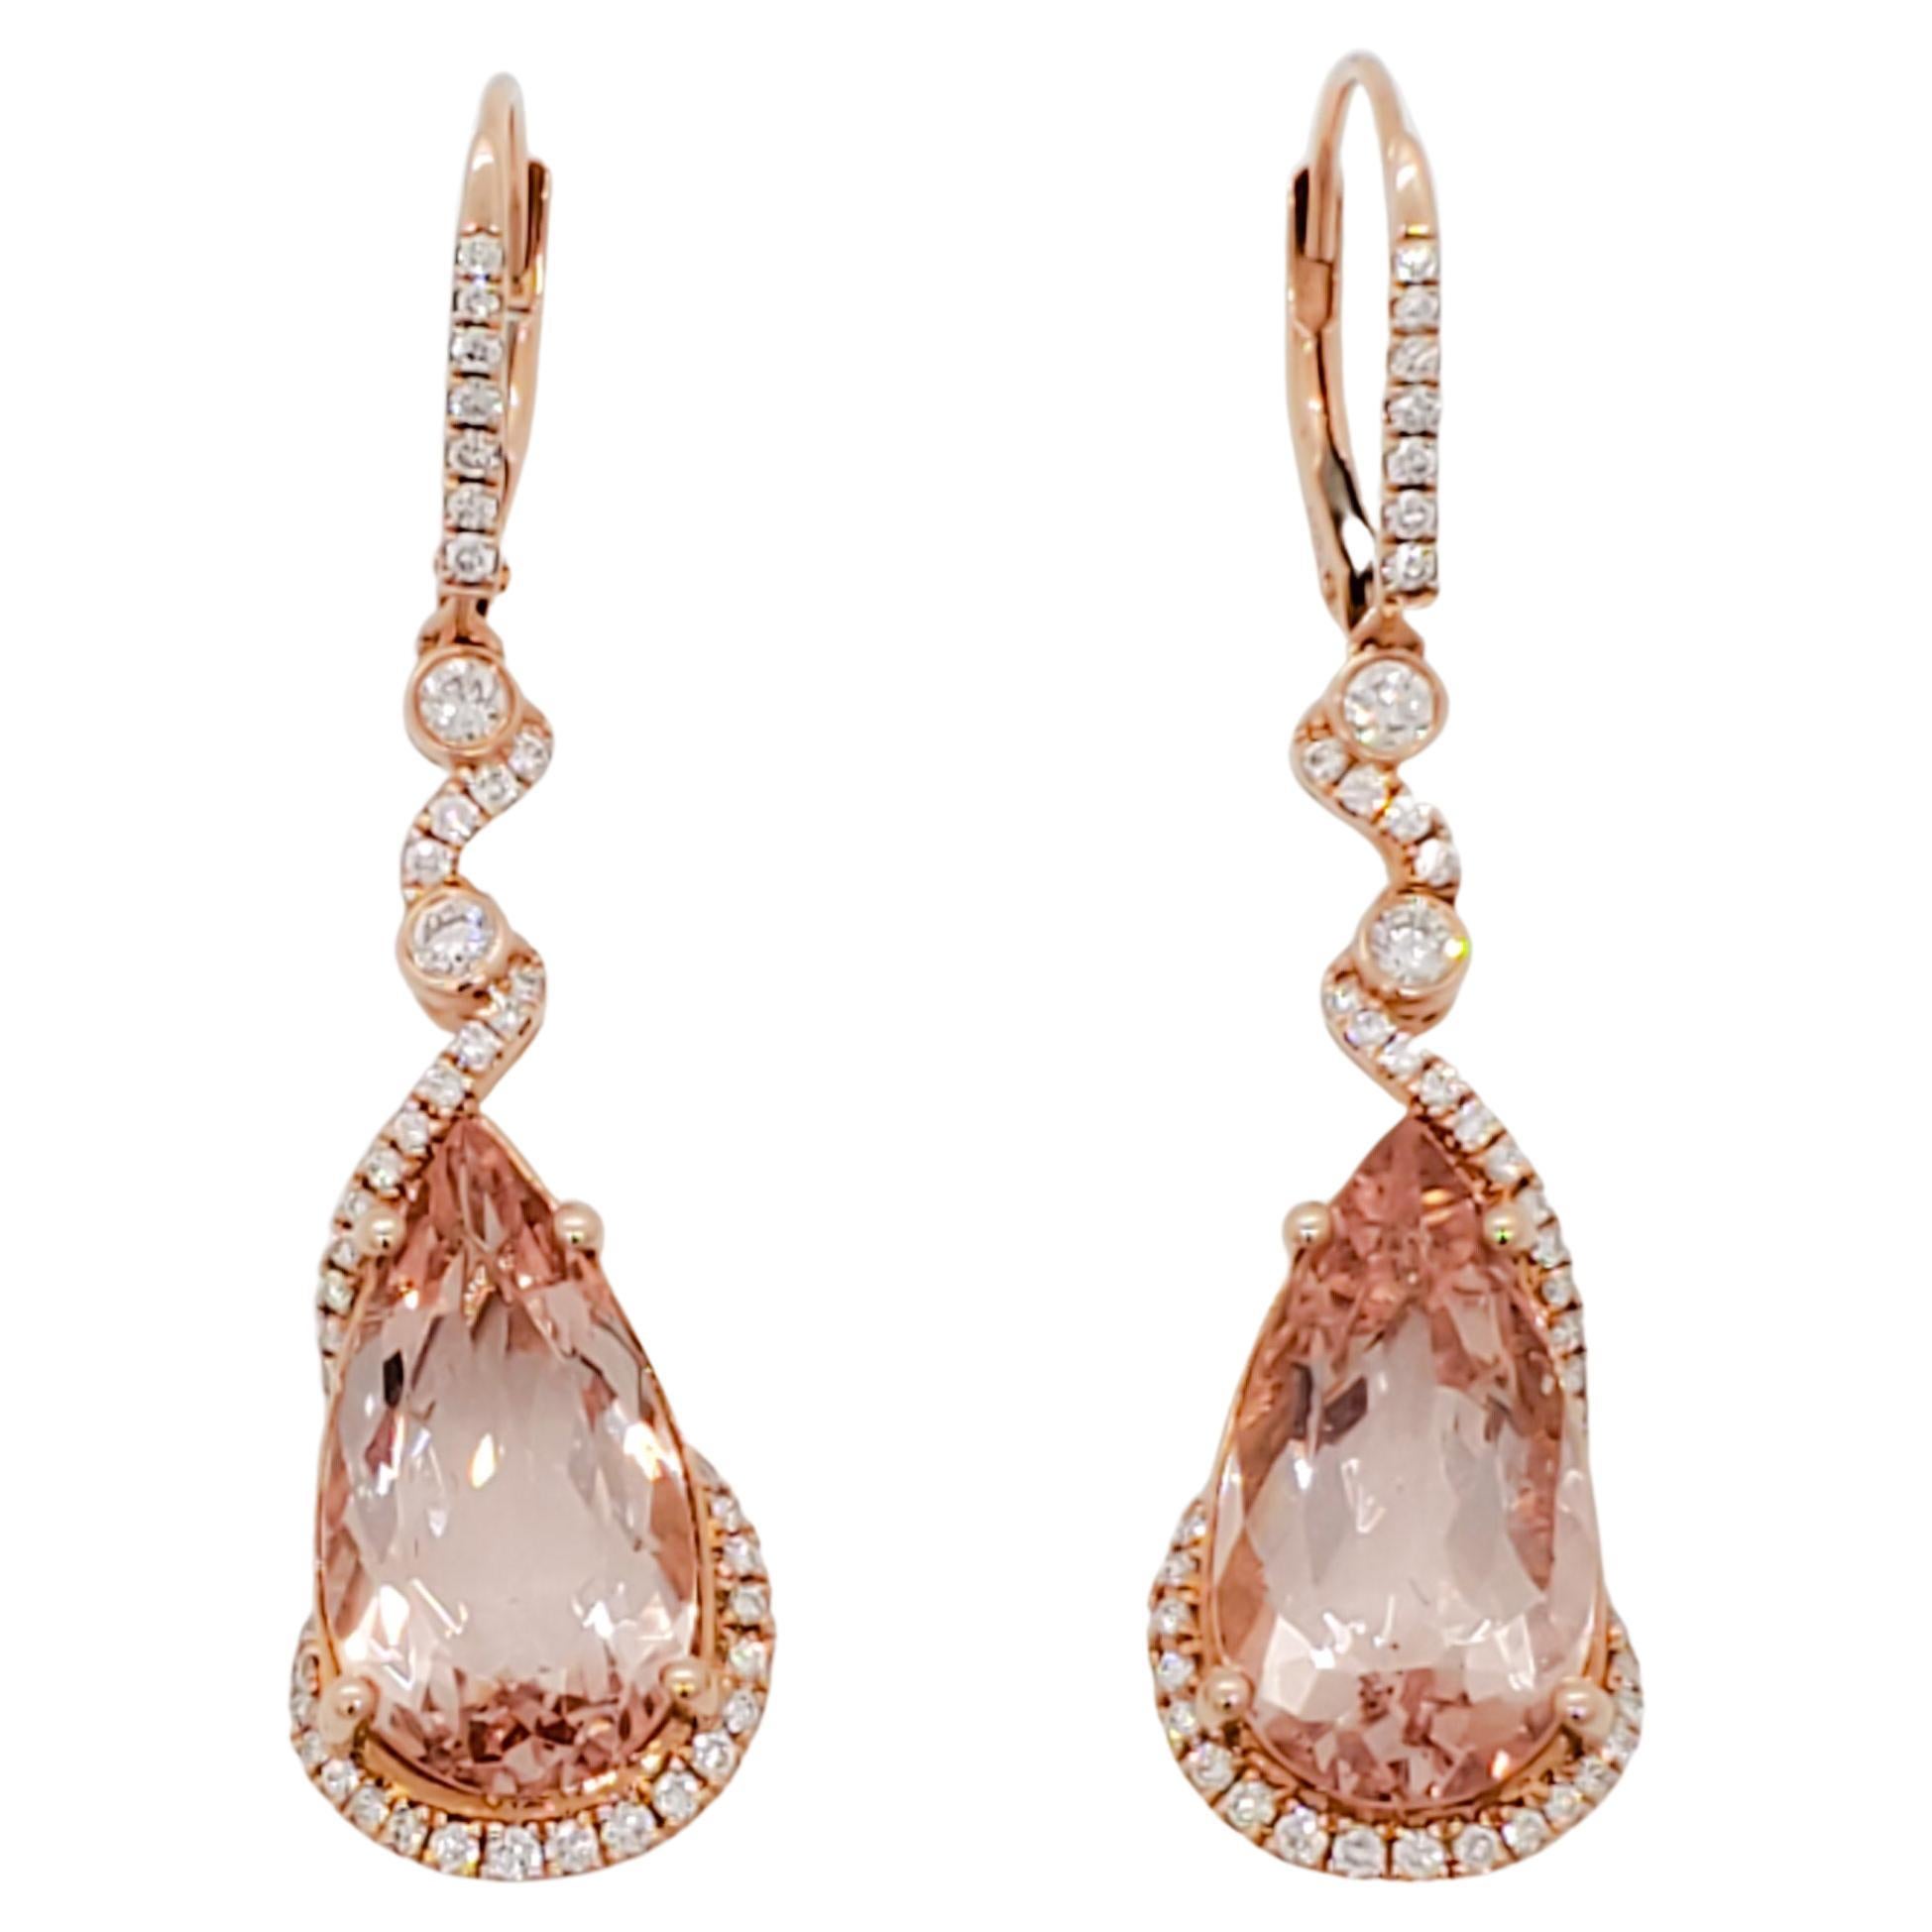 Morganite and Diamond Dangle Earrings in 14k Rose Gold